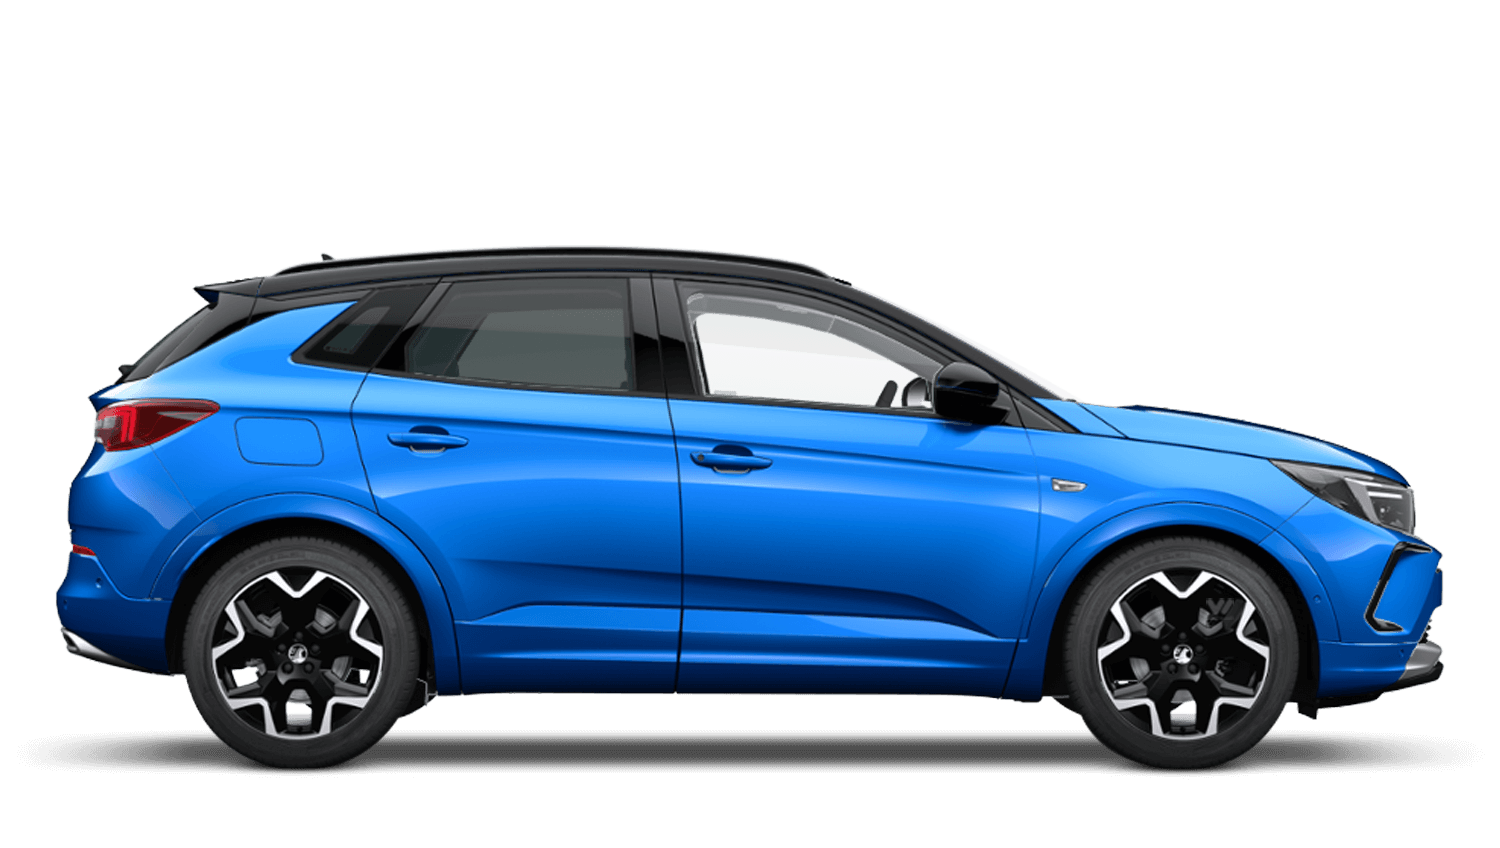 Vertigo Blue (Metallic) New Vauxhall Grandland